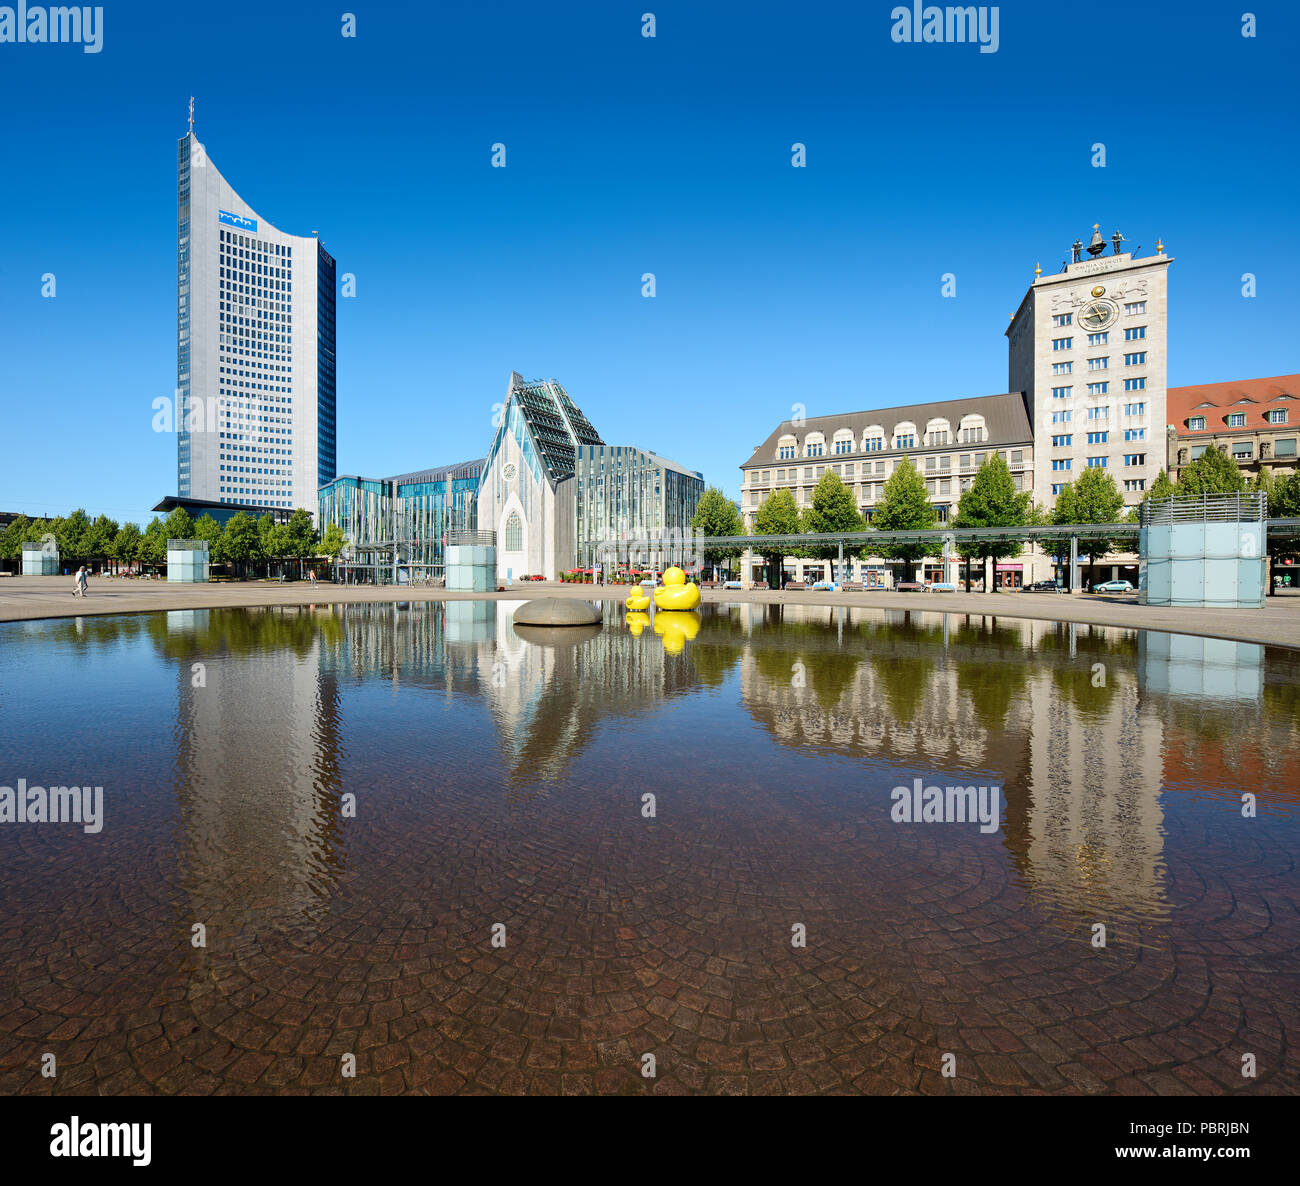 Augustus Square, City Hochhaus, Augusteum und Paulinum der Universität, Kroch Hochhaus, Wasser Reflexion in Wasserbecken Stockfoto